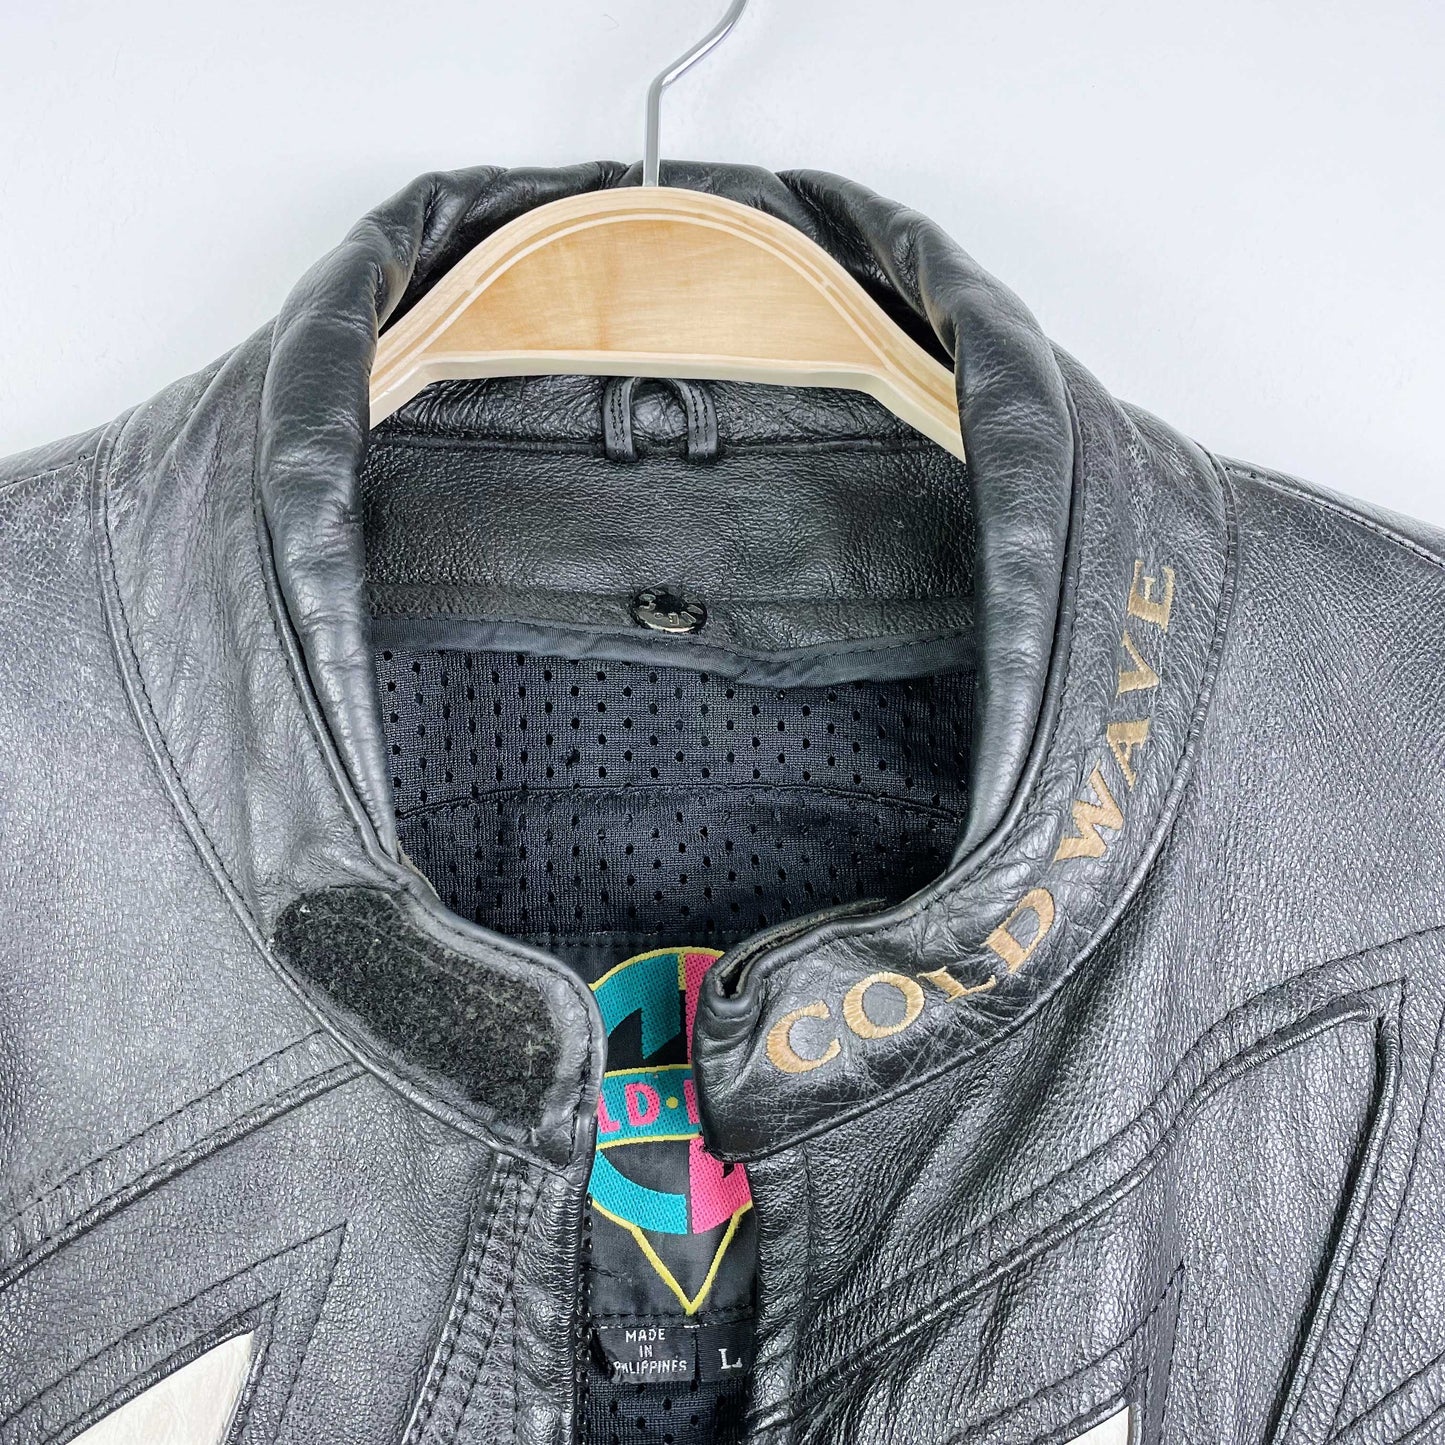 vintage 80s coldwave checkerboard bolt moto jacket